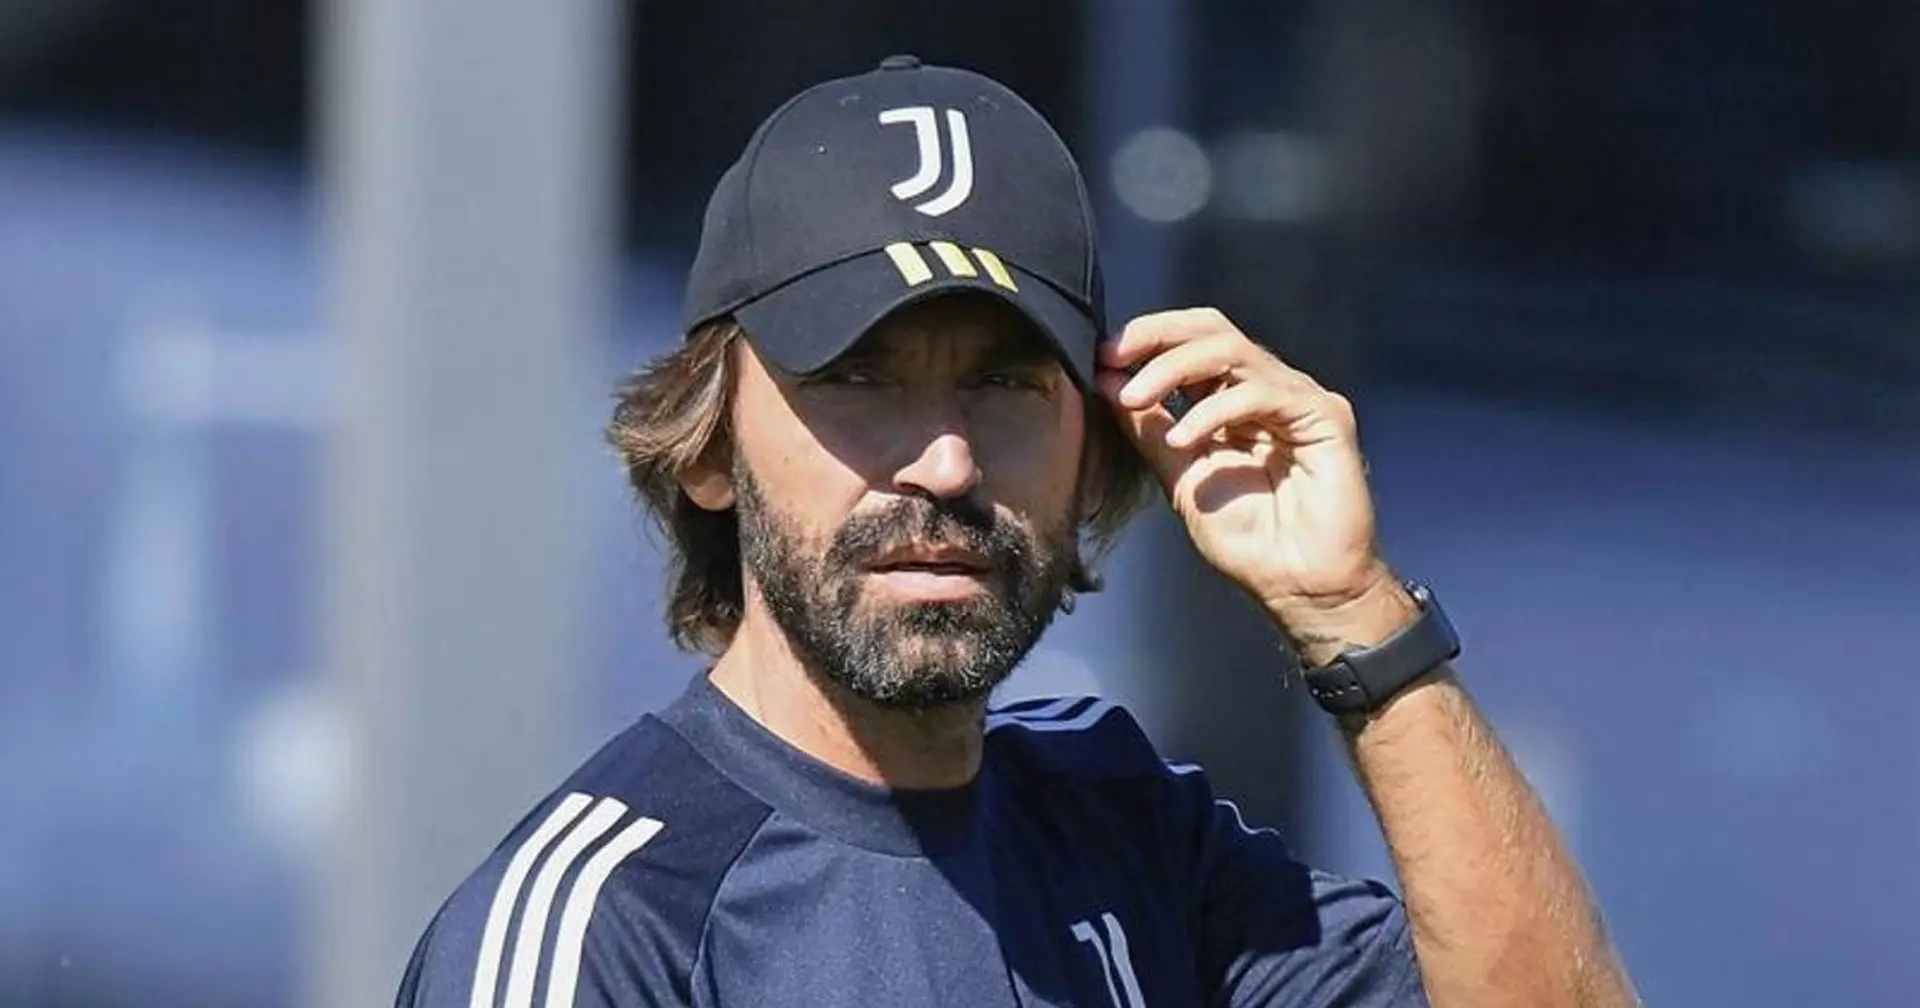 La prima Juventus di Pirlo scenderà in campo domenica contro il Novara: il match sarà in diretta su Sky Sport